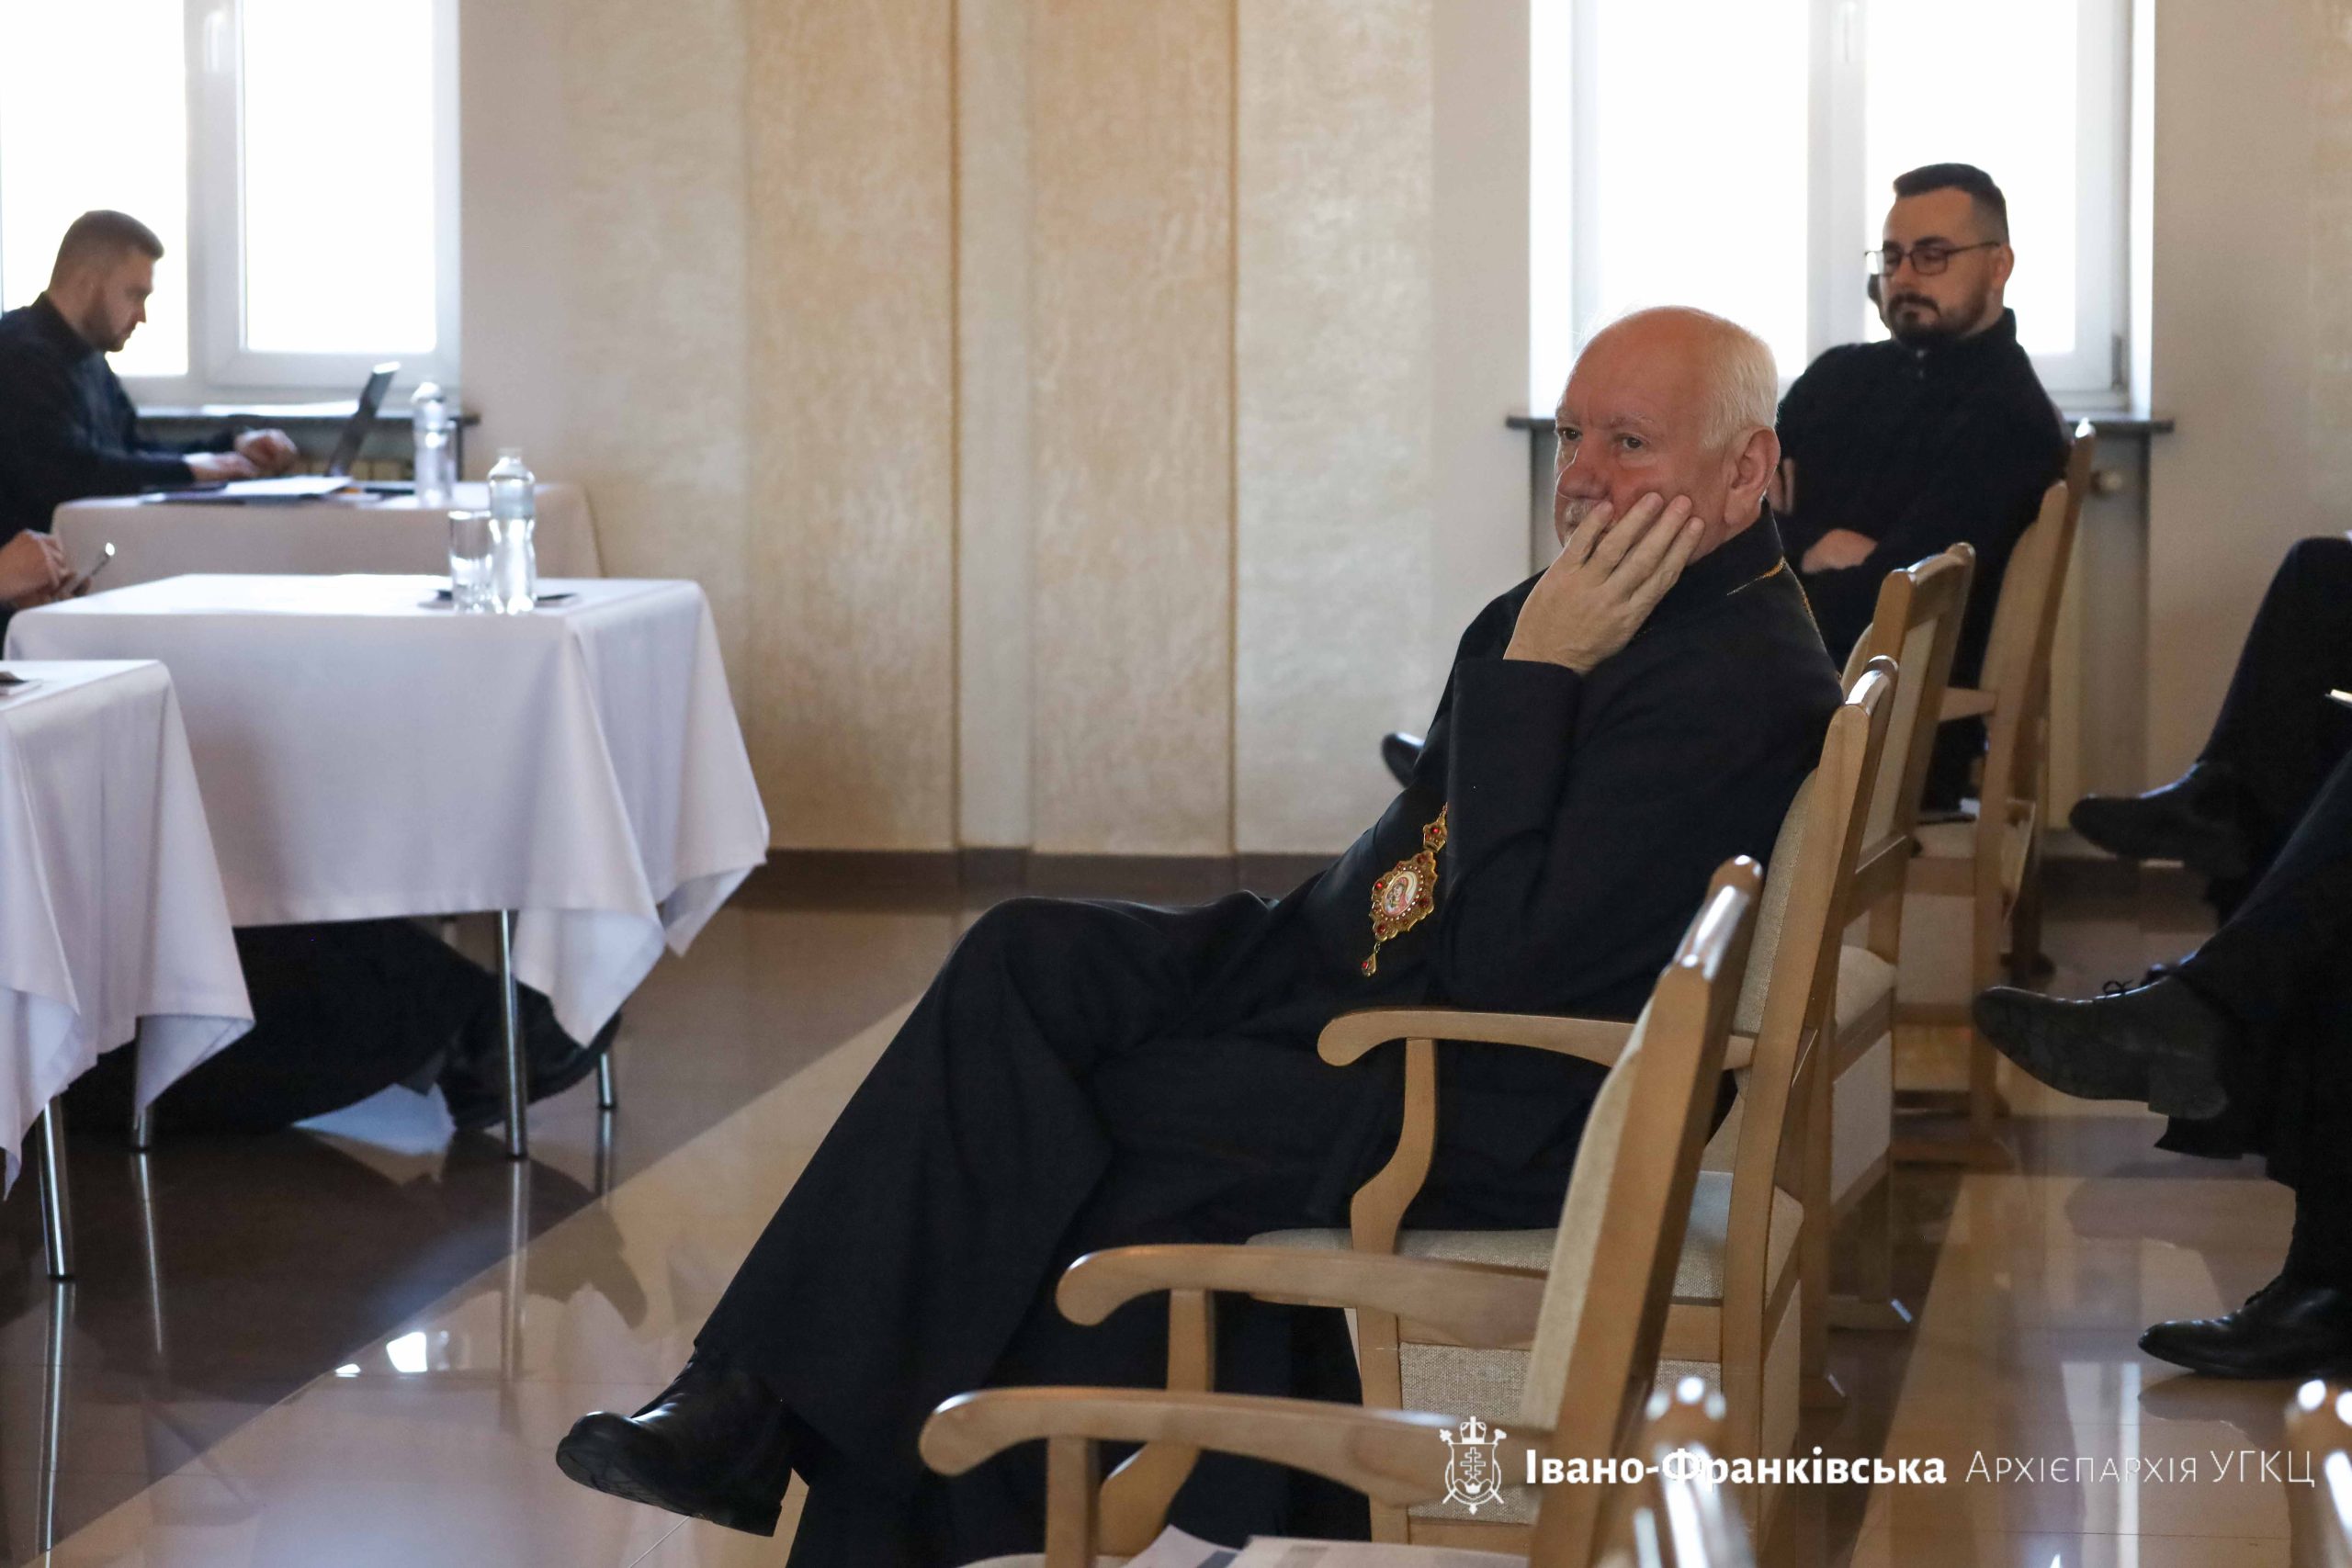 Вперше в новому році відбулися збори протопресвітерів Івано-Франківської Архієпархії